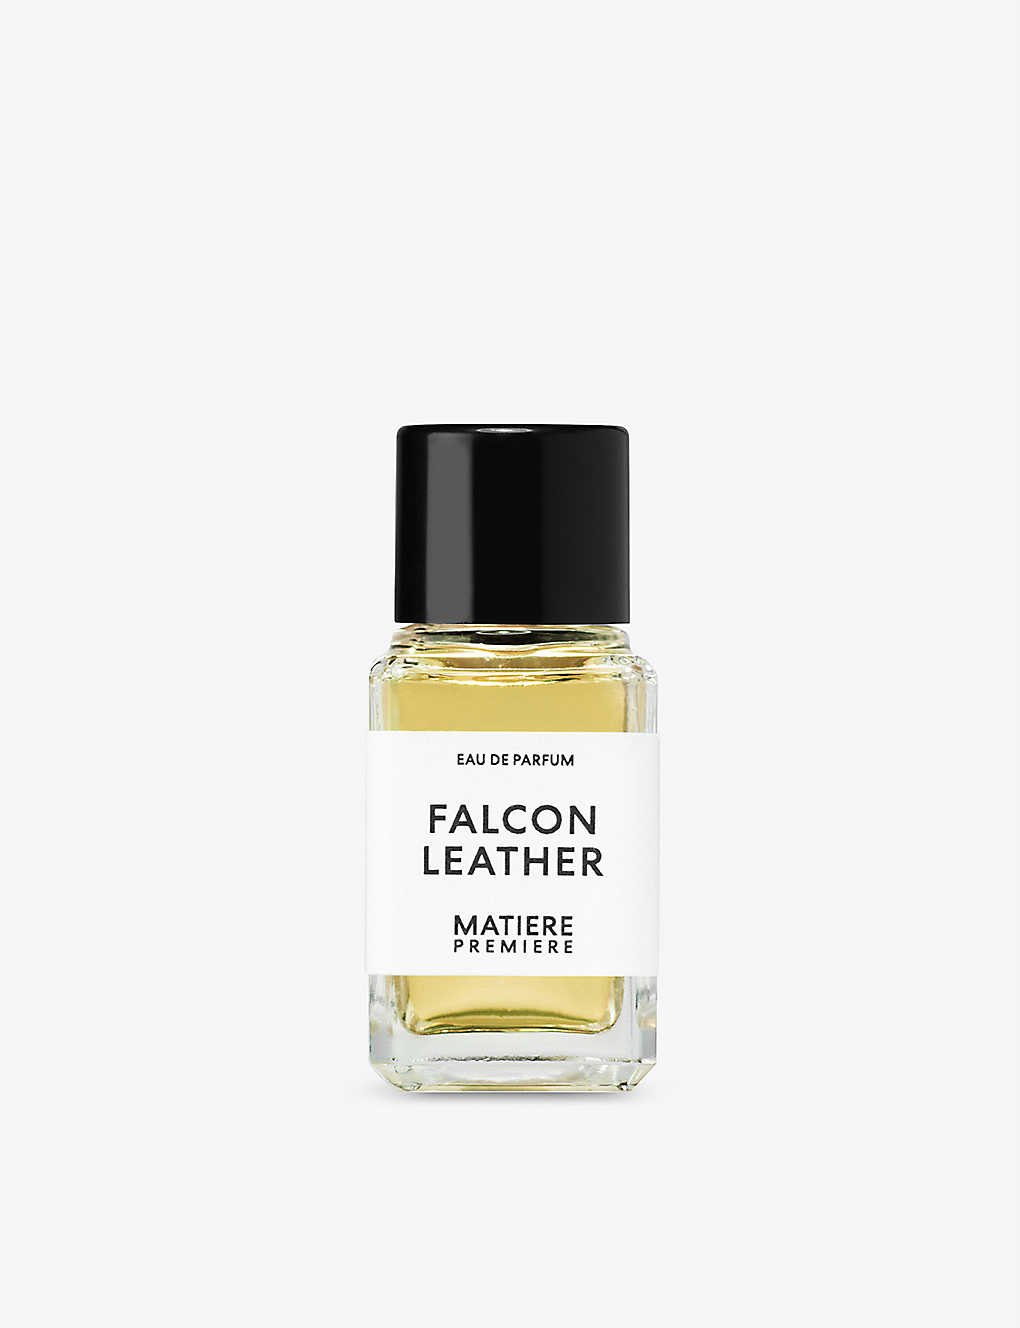 Matiere Premiere Falcon Leather Eau De Parfum 6ml